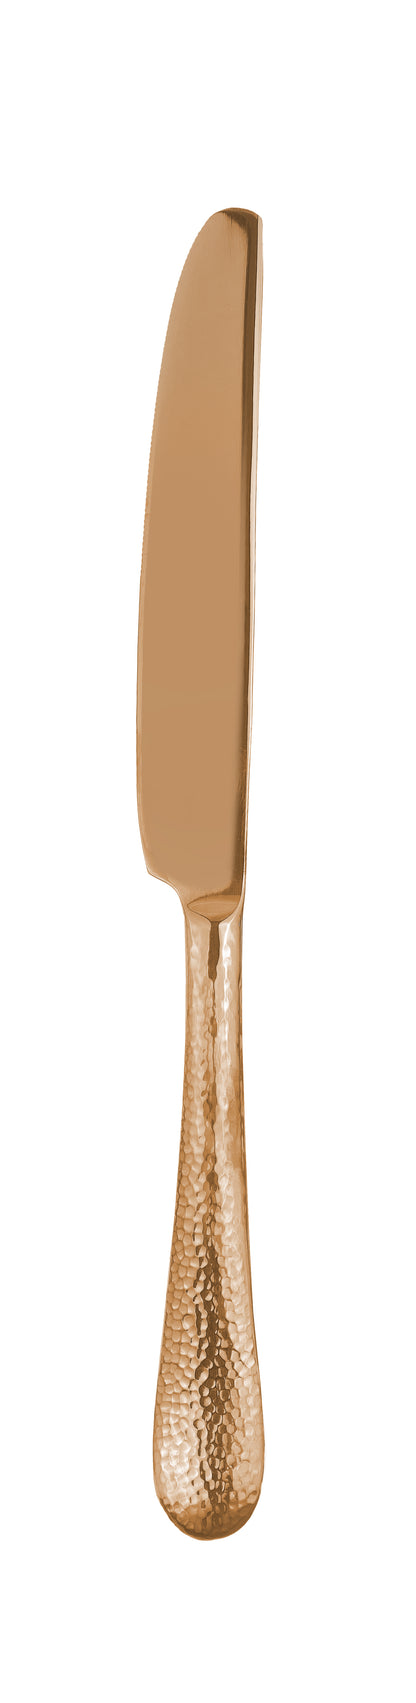 Dessert knife SITELLO PVD pale copper 213mm